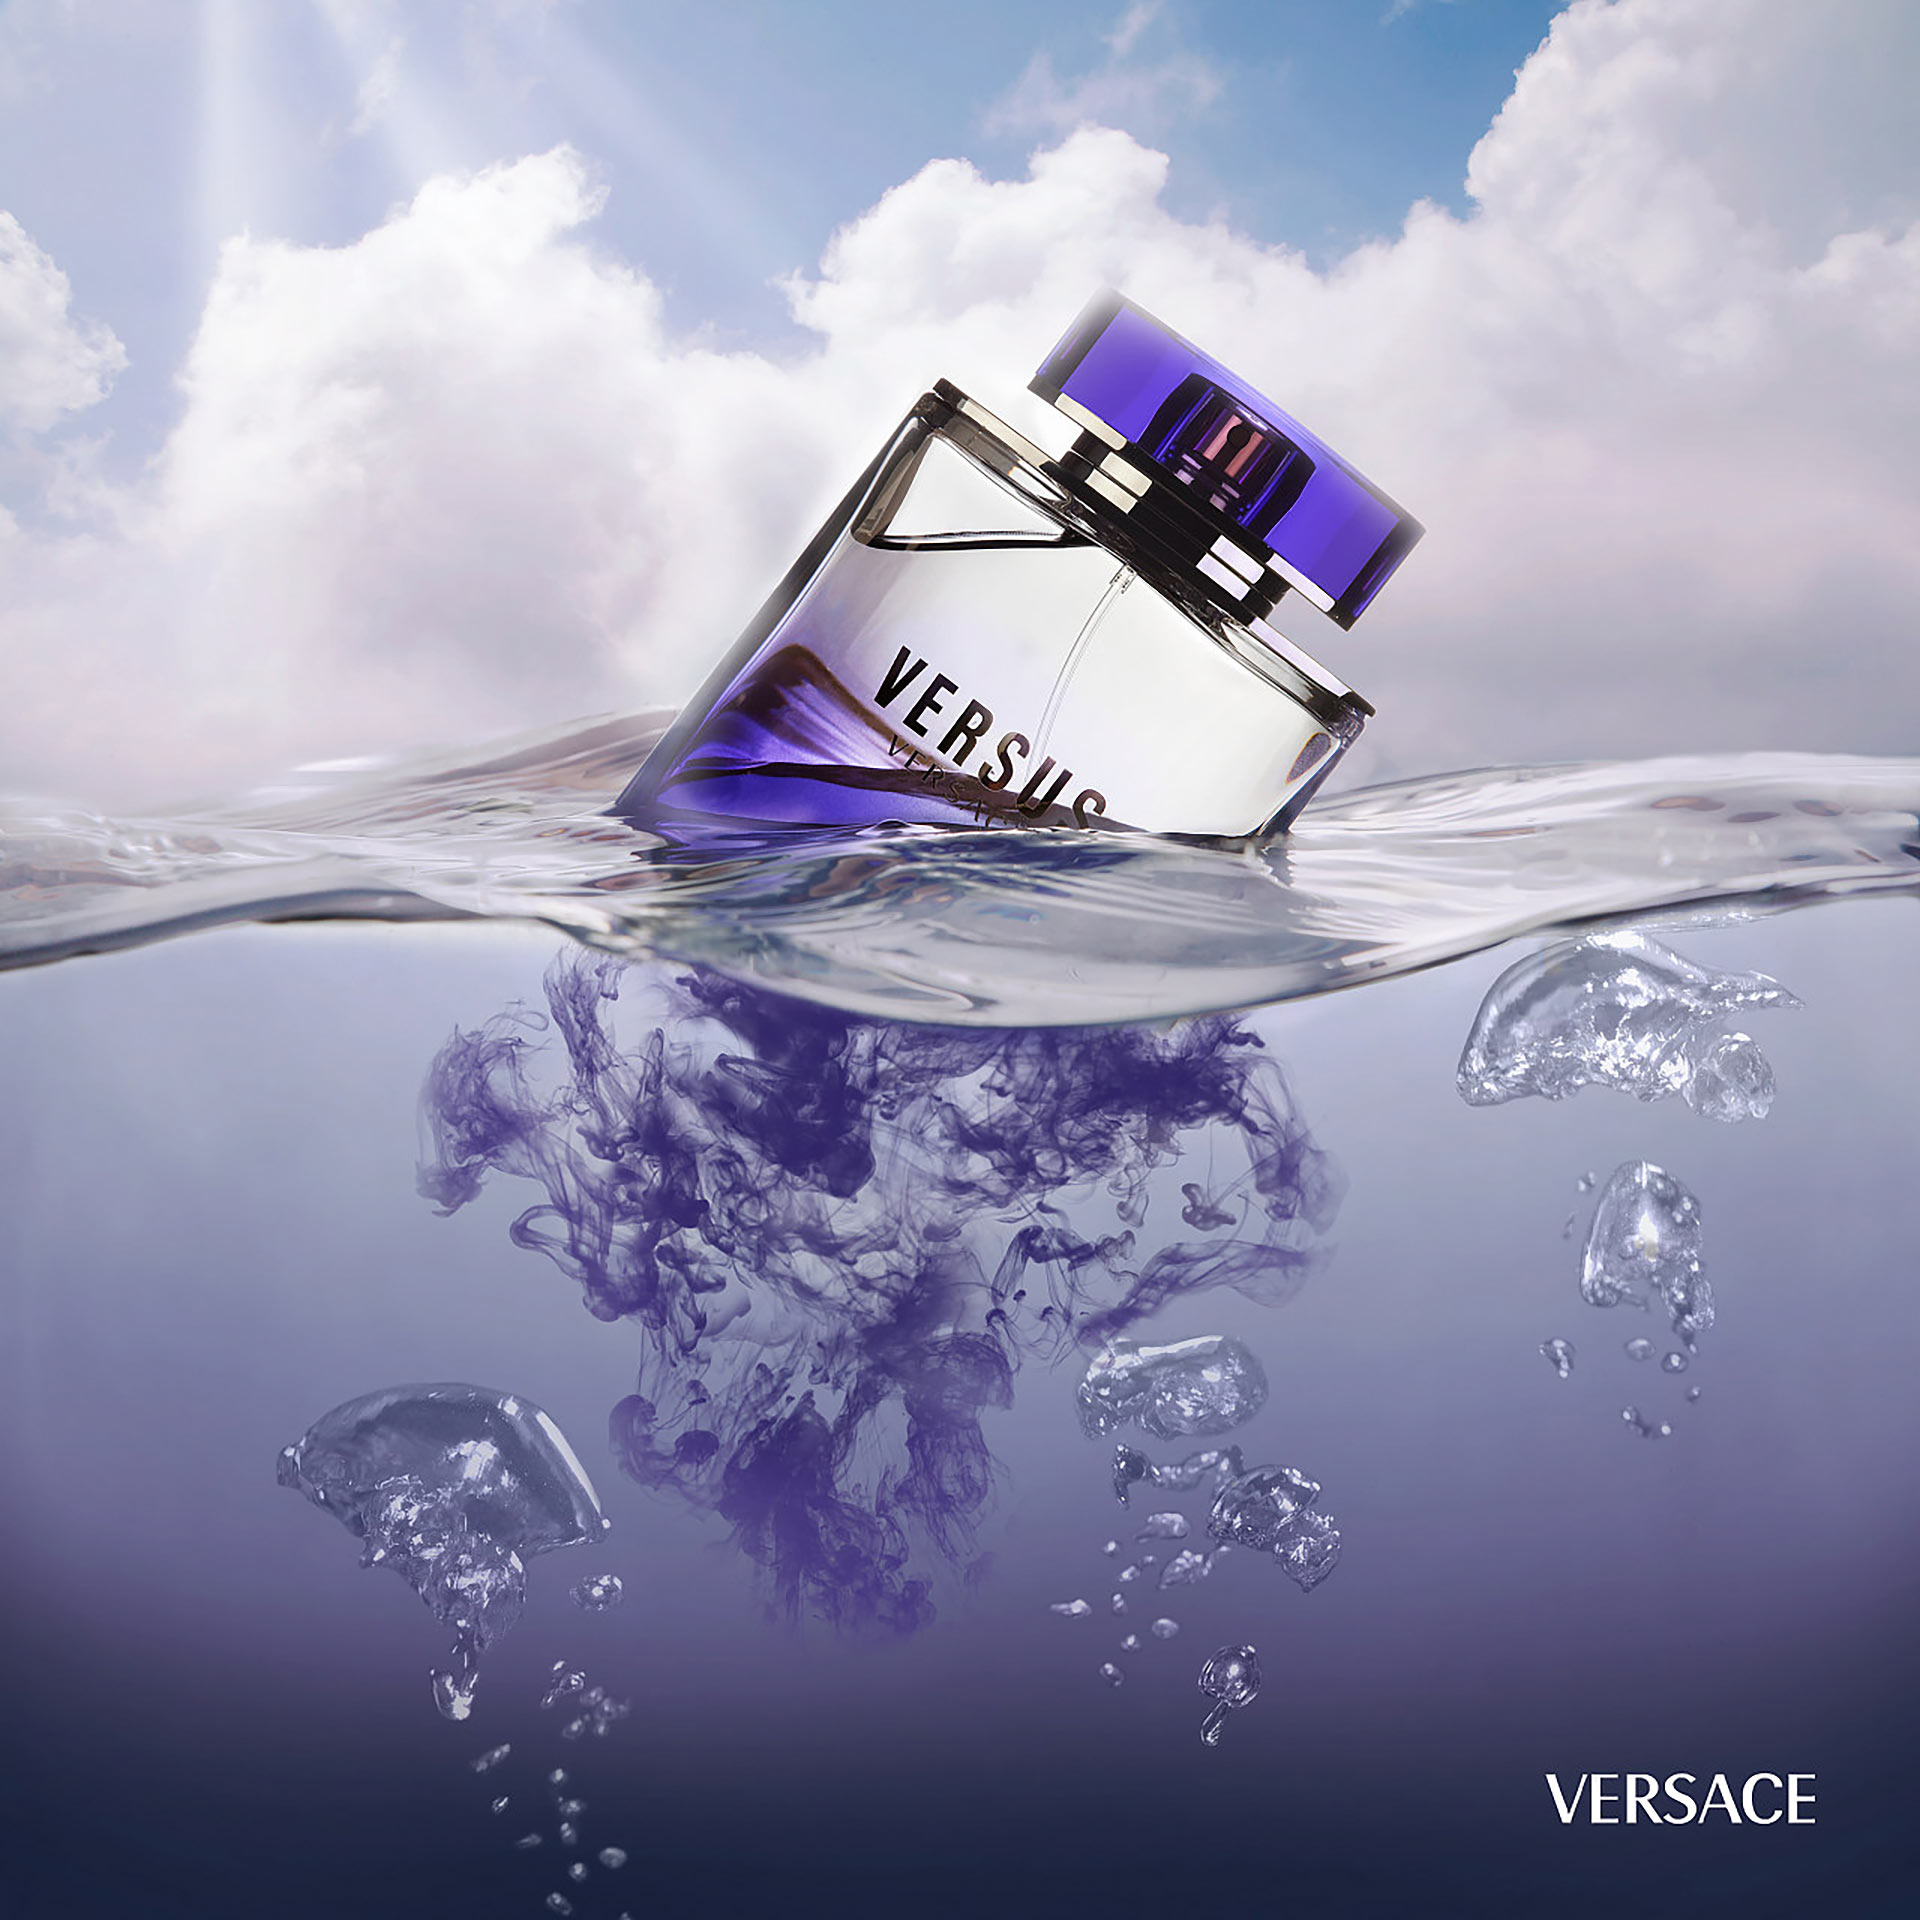 Versace（范思哲）于纽约时装周发布2019早… - 堆糖，美图壁纸兴趣社区